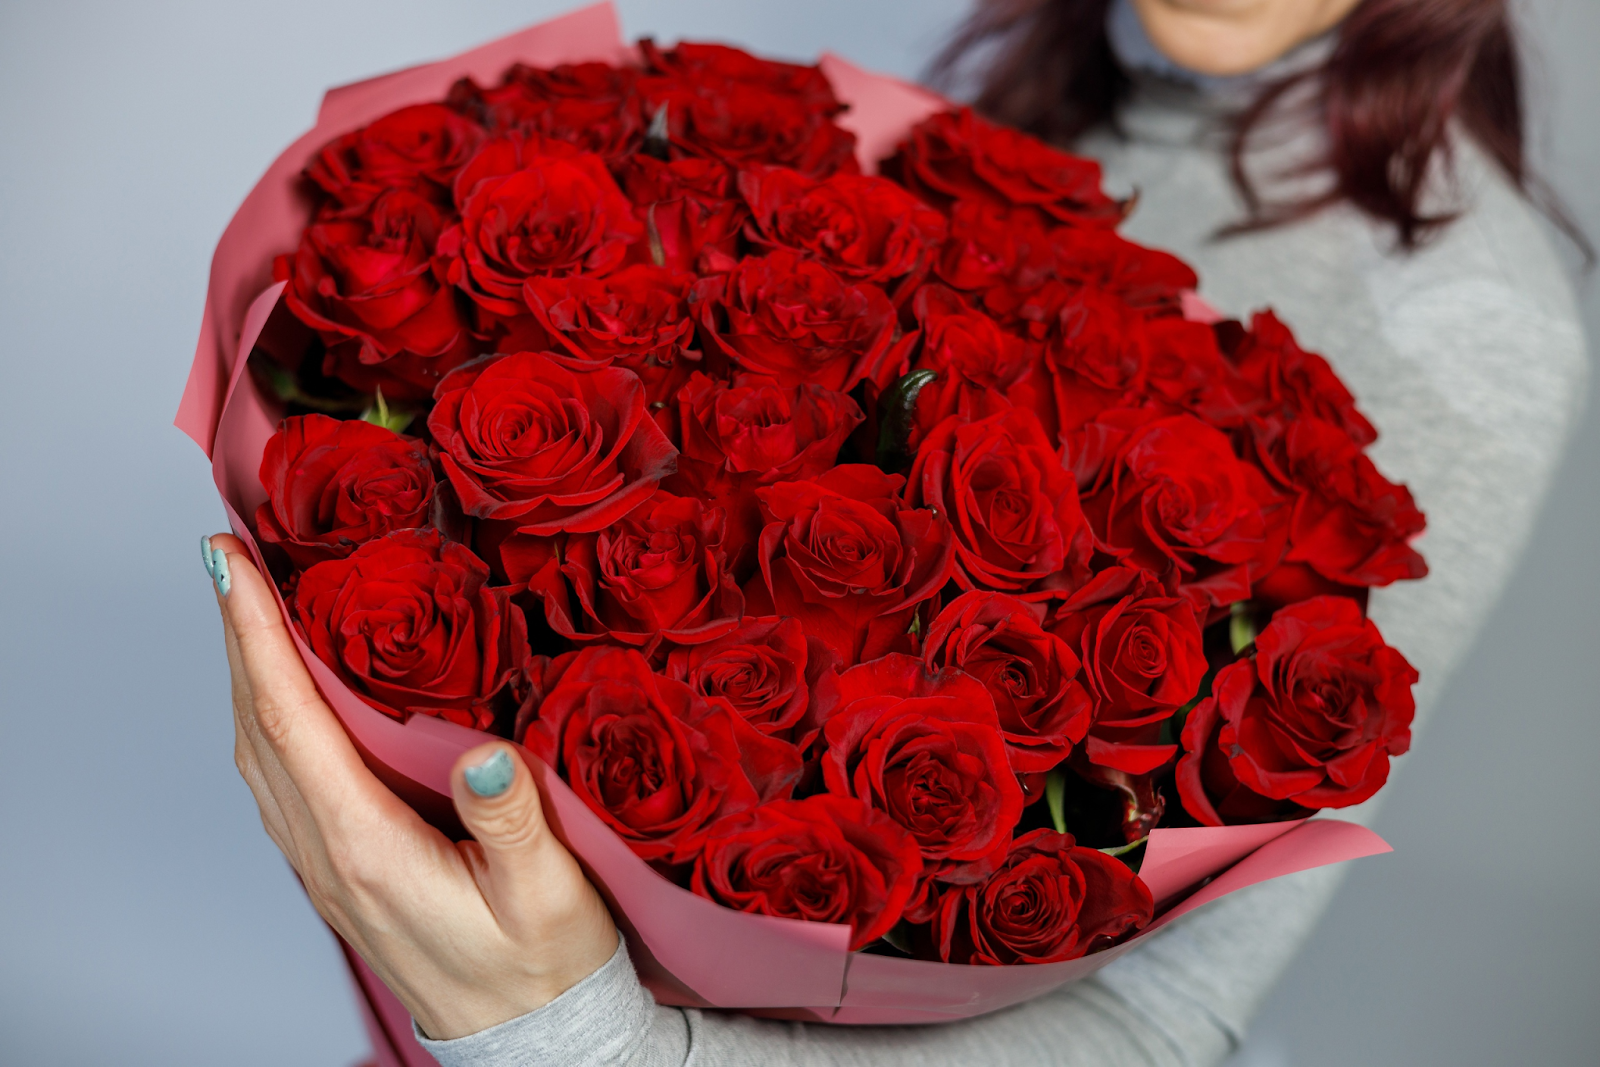 Какие подарить цветы маме на день рождения. Большой букет роз в руках. Какие цветы подарить девушке на день рождения. Какого цвета лучше подарить розы любимой девушке. Какие цветы подарить женщине на 35 лет.